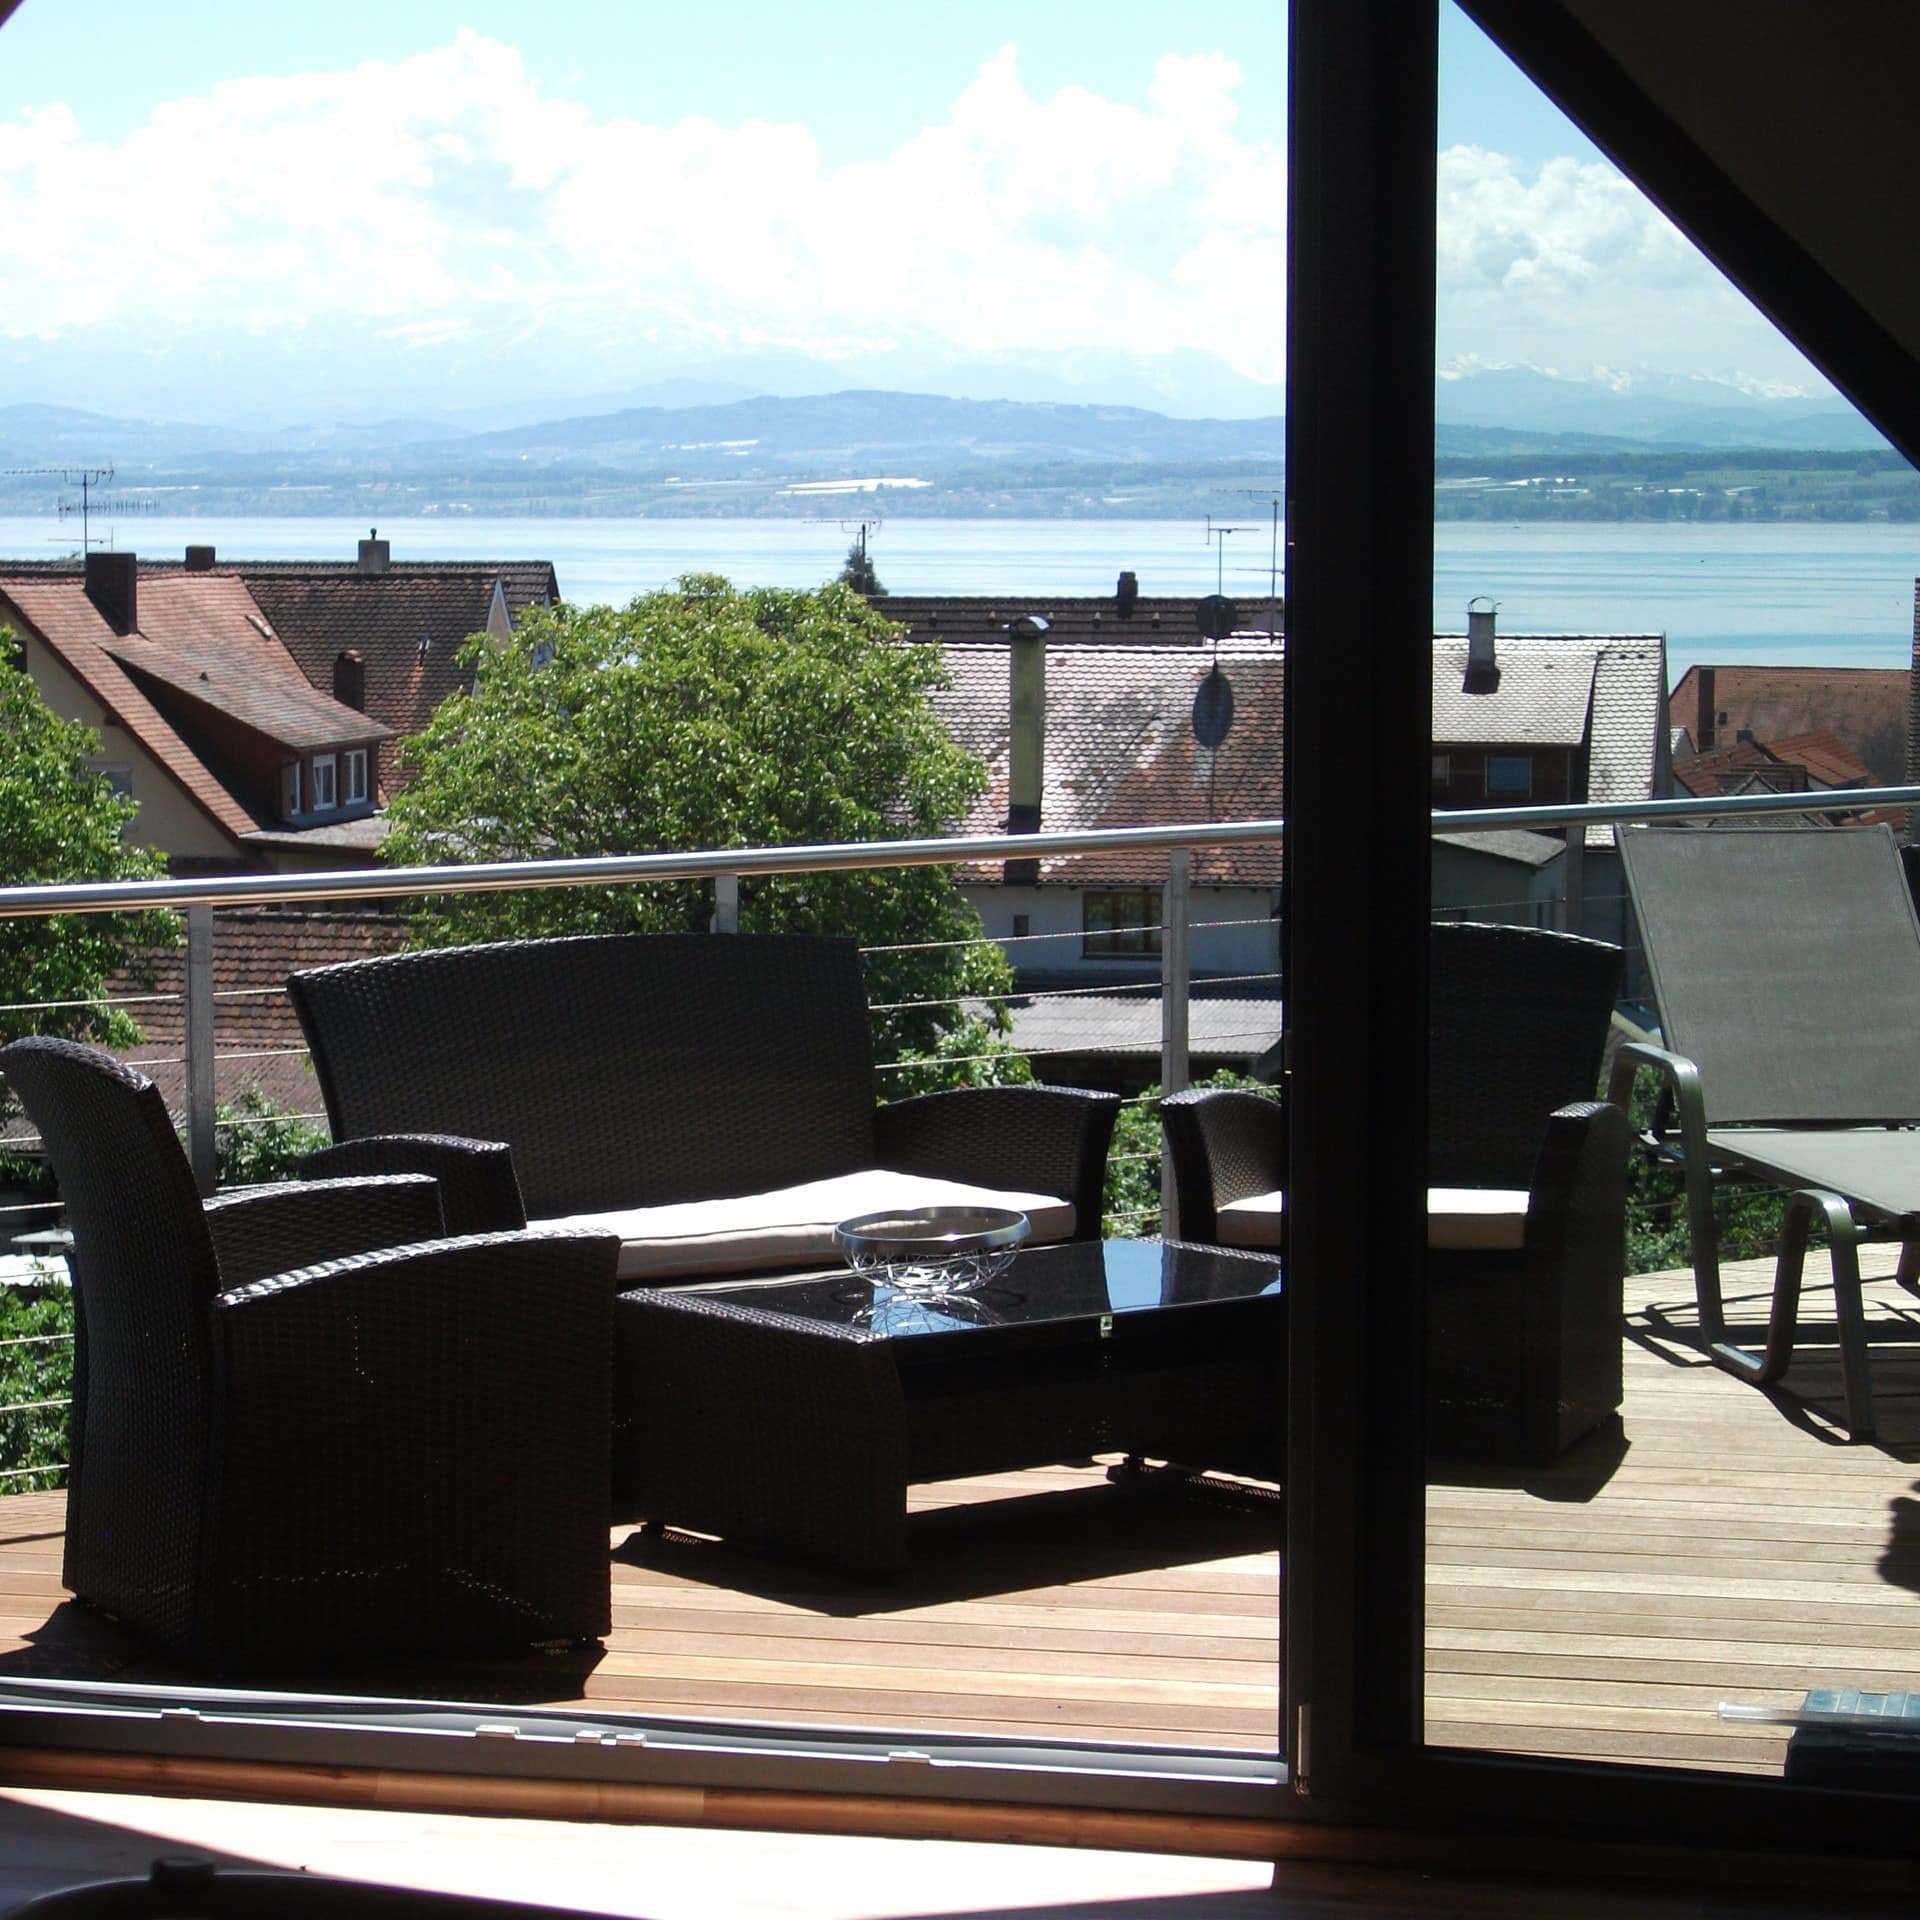 Blick aus dem Wohnzimmer einer Meersburger Ferienwohnung auf die Terrasse mit Blick auf den See und die Alpen